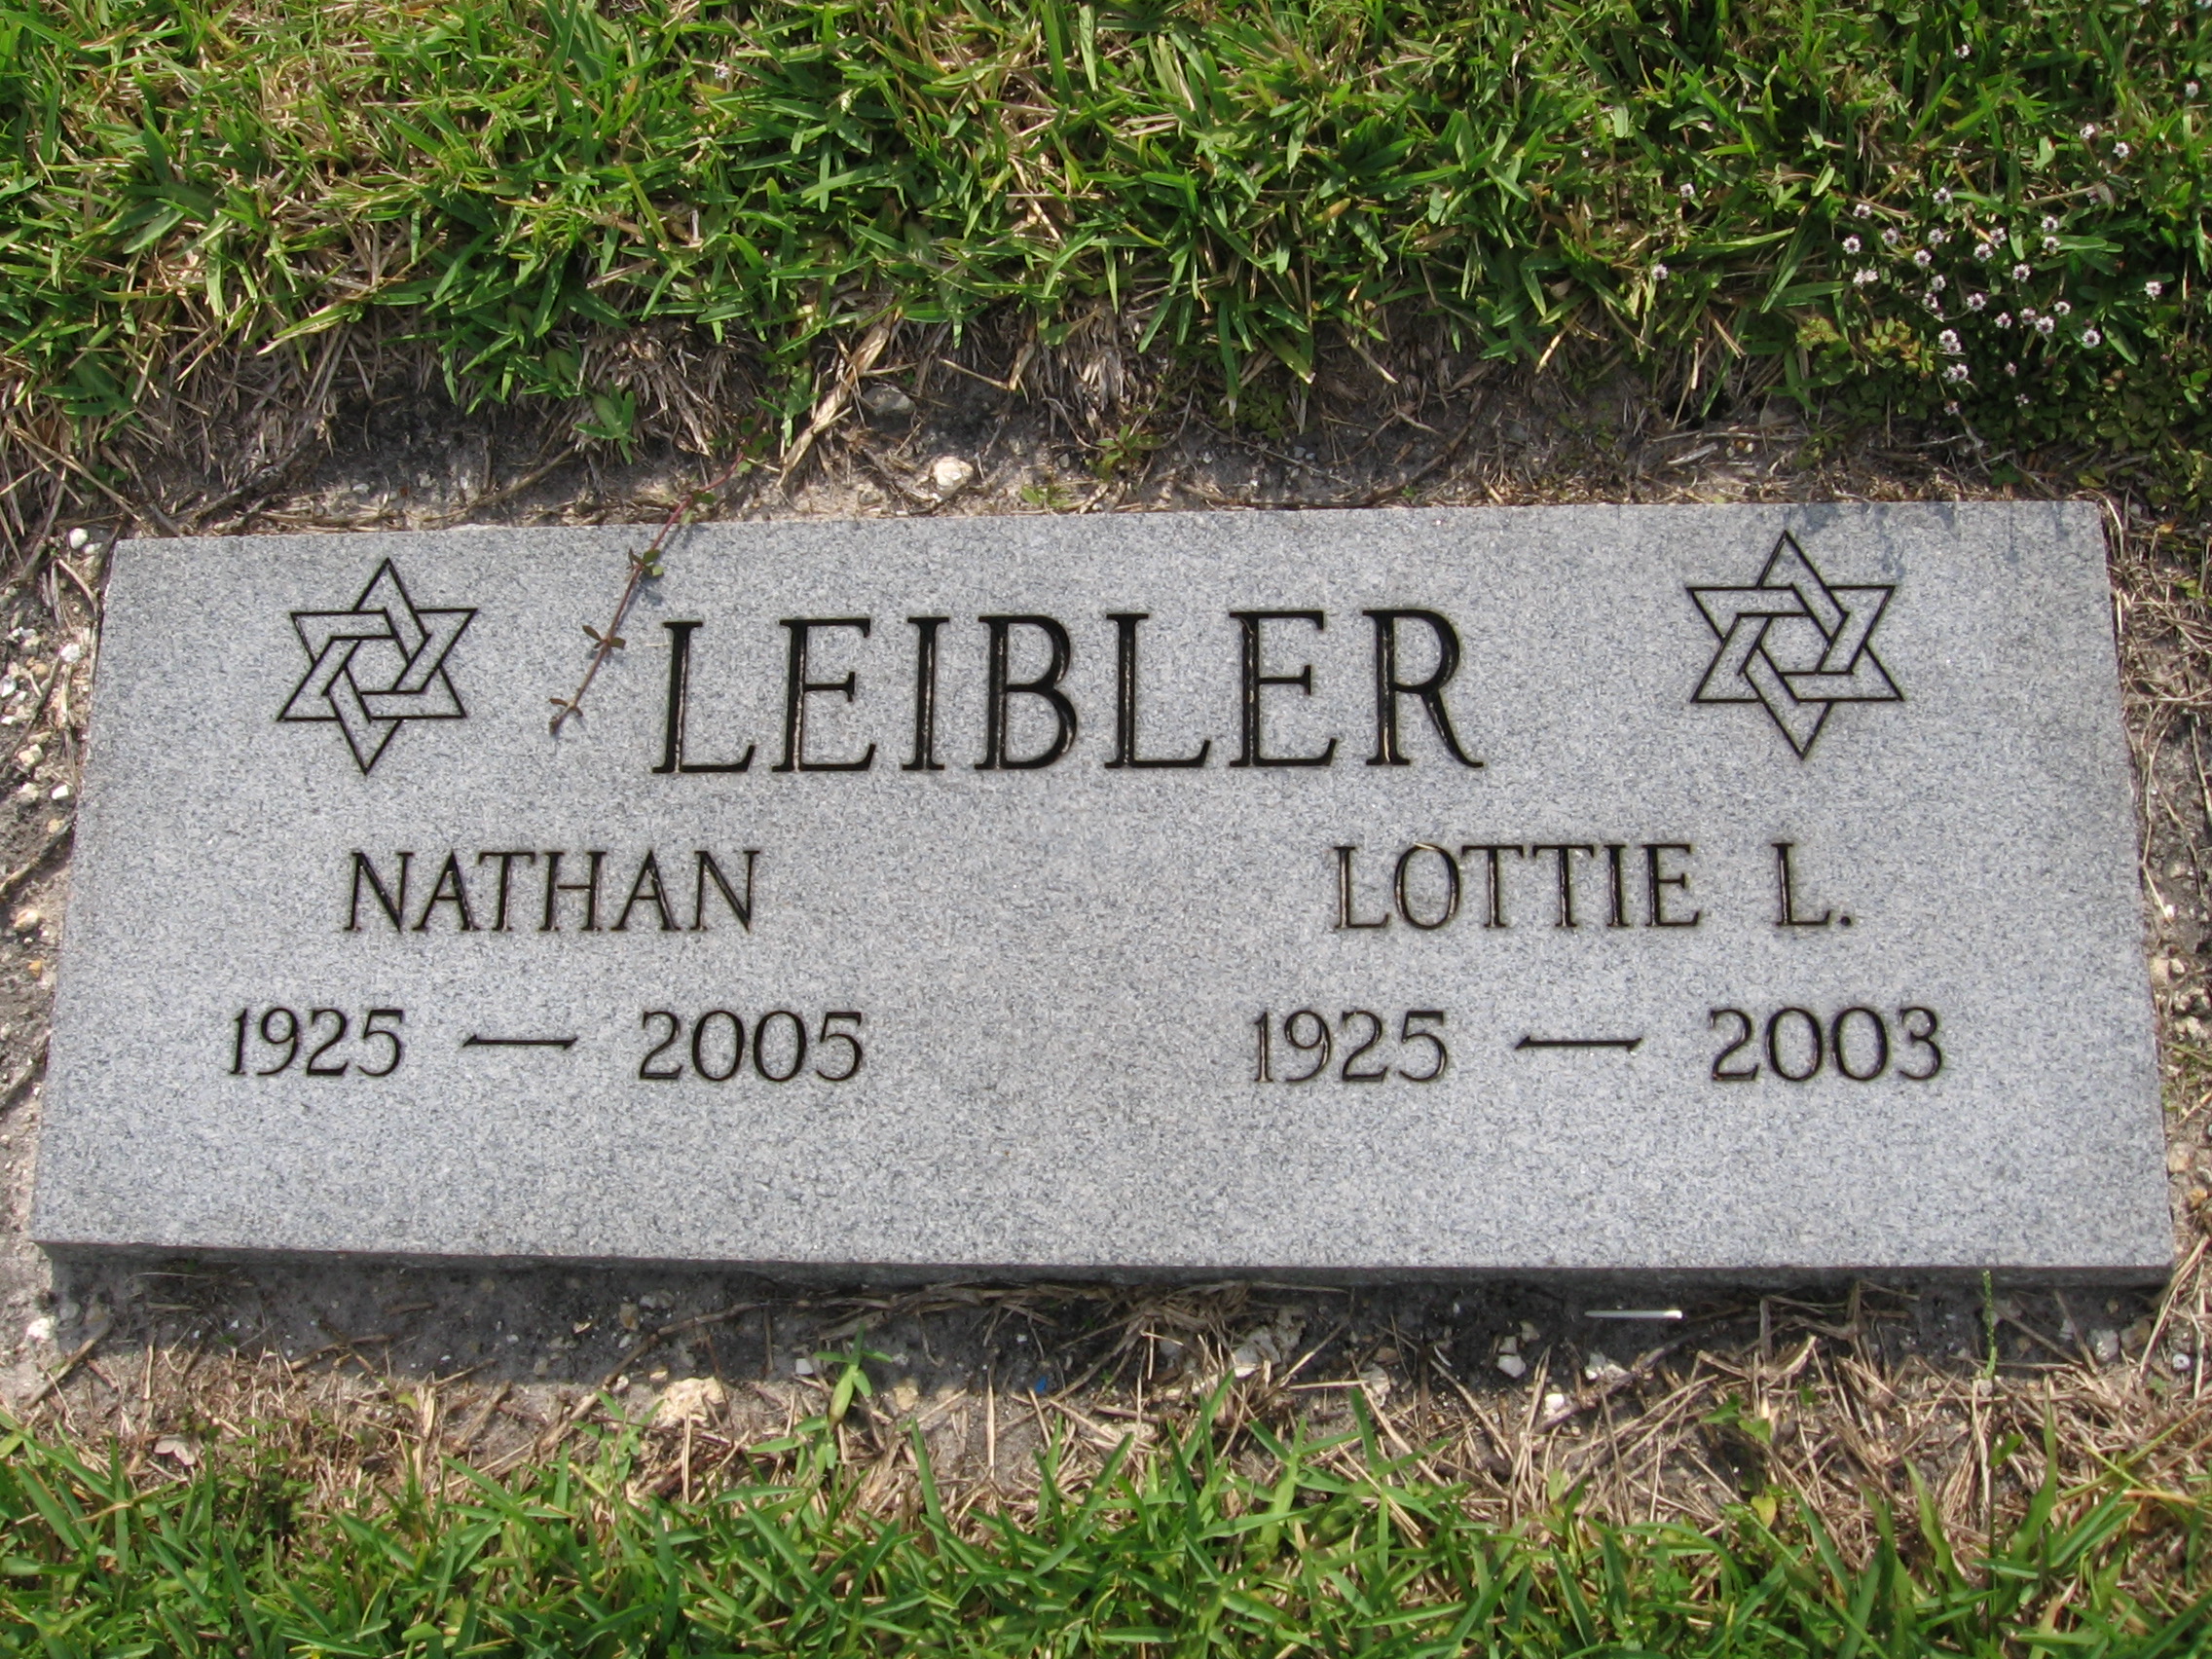 Nathan Leibler